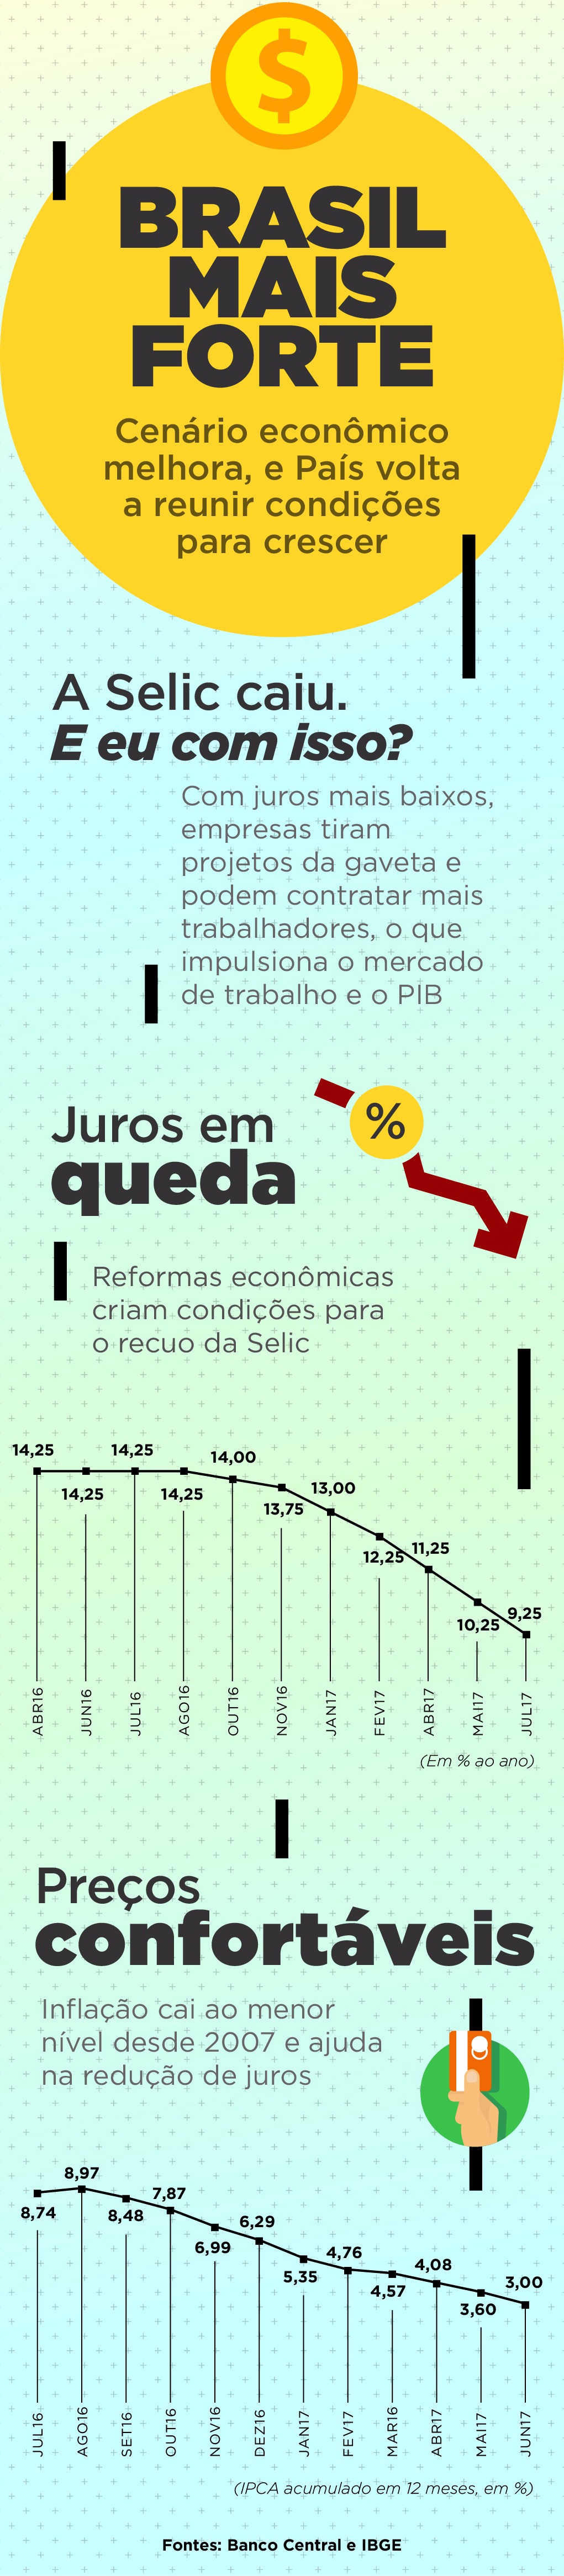 Portal Brasil, com informações do Banco Central, IBGE, Banco do Brasil, Gradual Investimentos e do Banco Fator